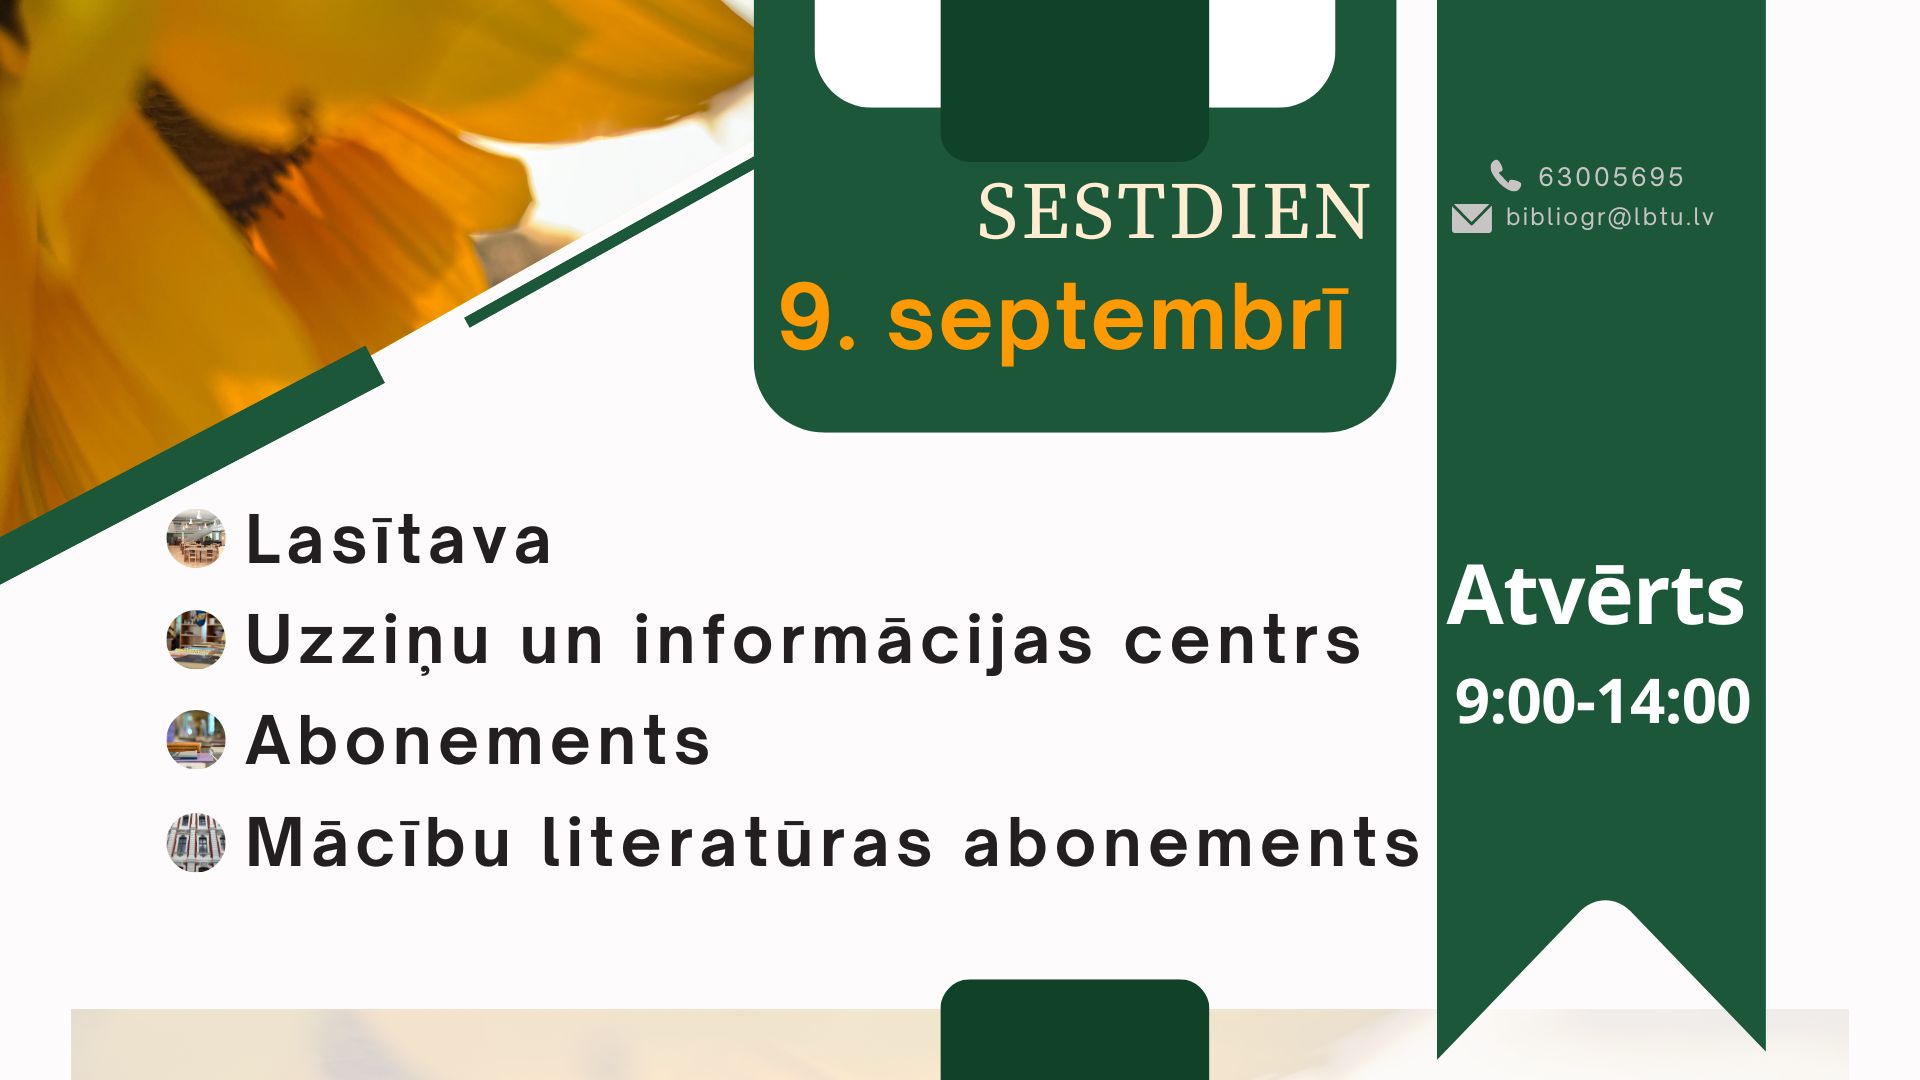 Sestdien, 9. septembrī, LBTU Fundamentālā bibliotēka lasītājiem atvērta no plkst. 9.00 līdz 14.00